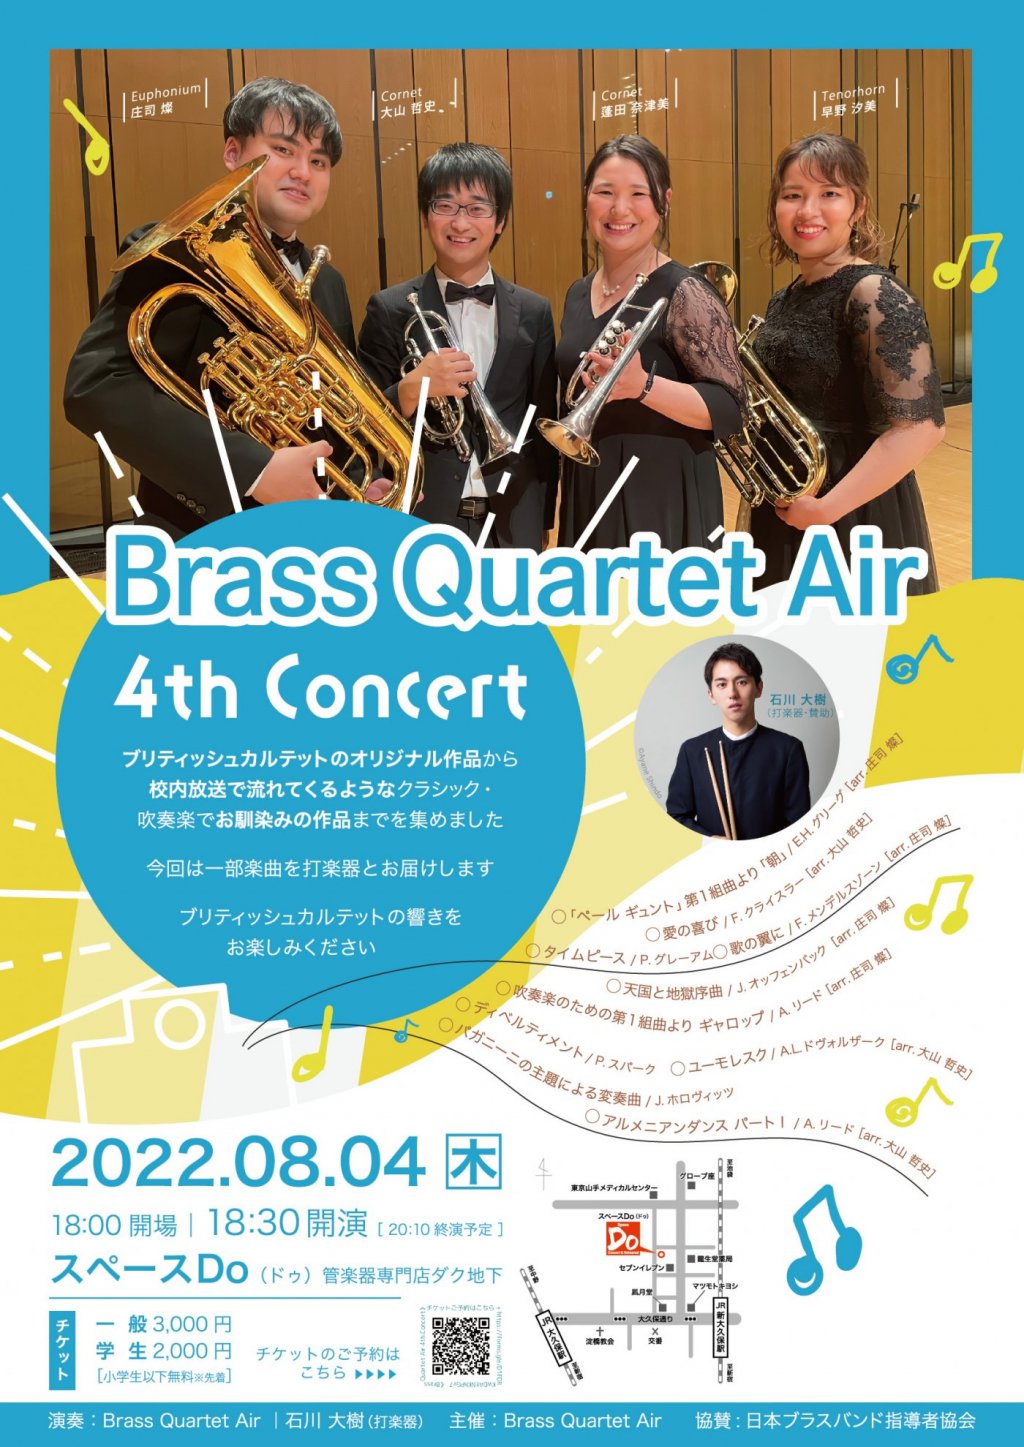 Brass Quartet Air 4th Concert